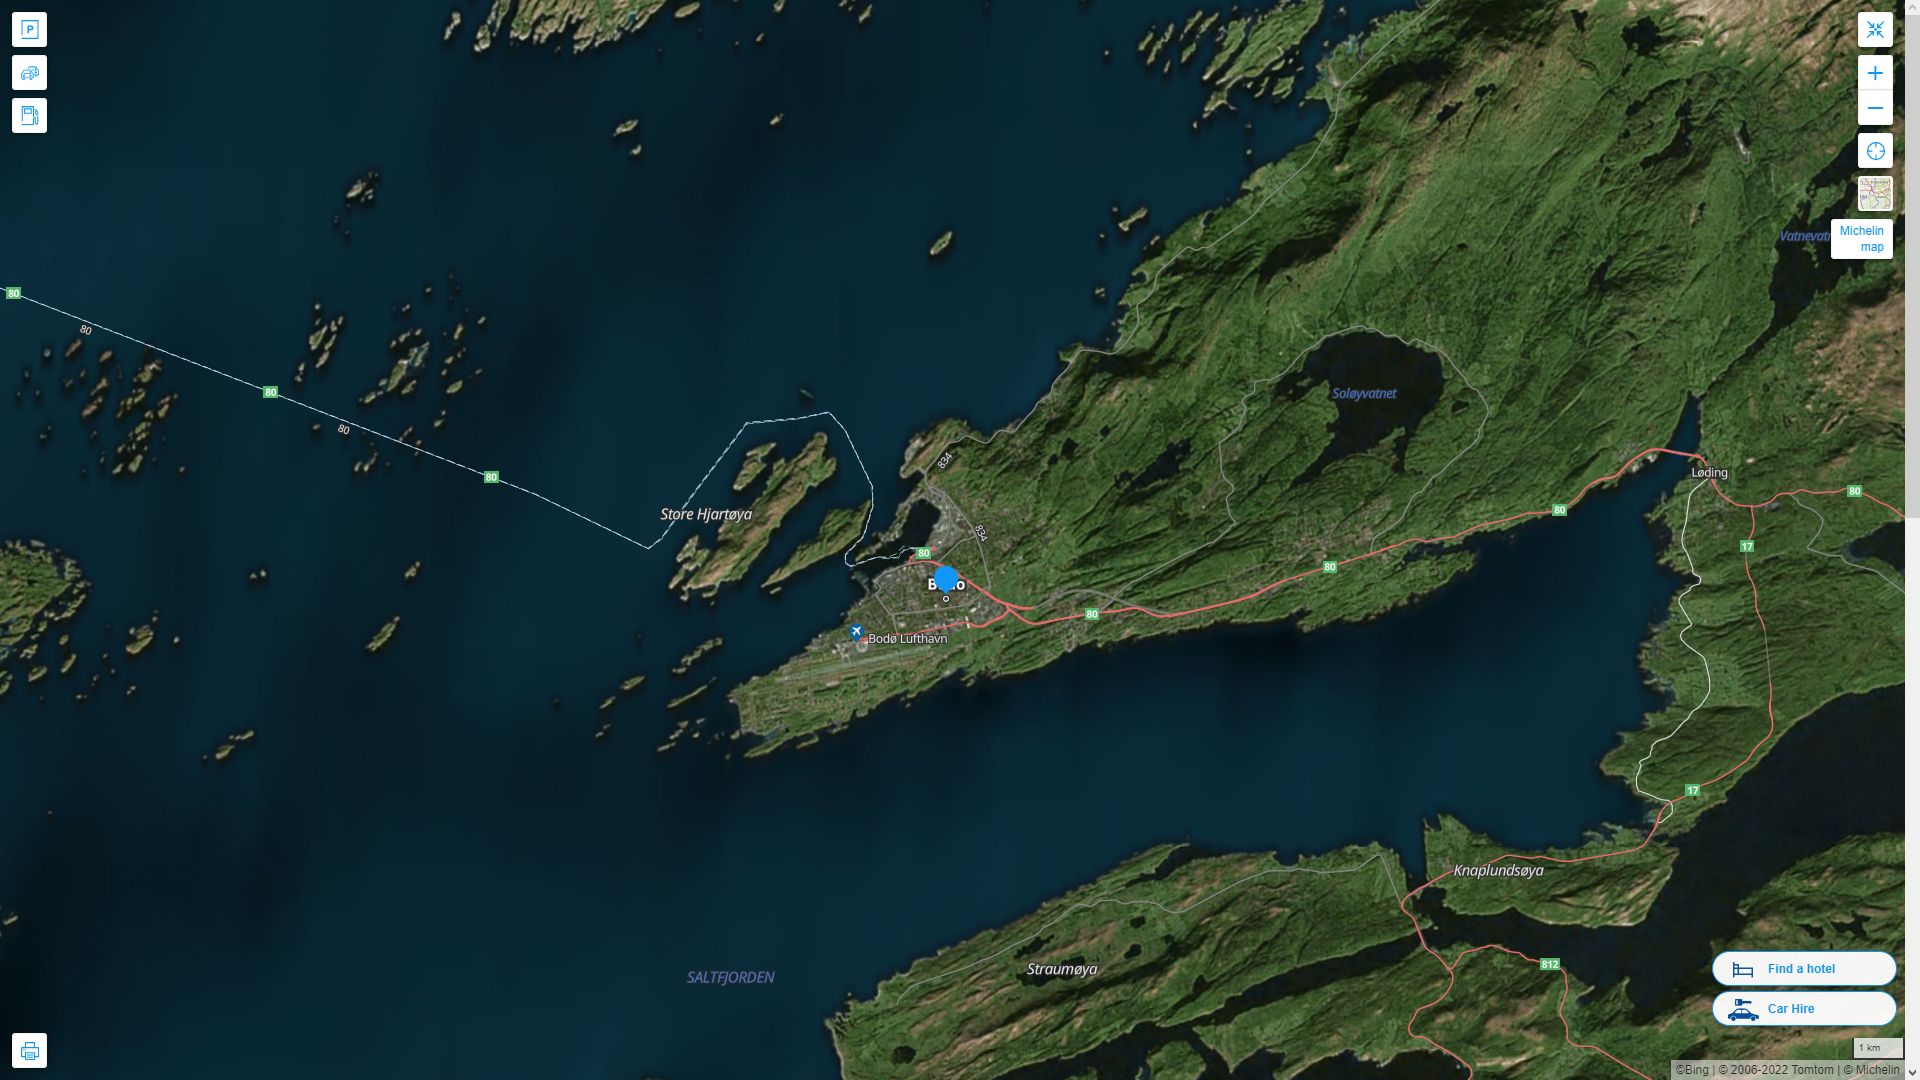 Bodo Norvege Autoroute et carte routiere avec vue satellite